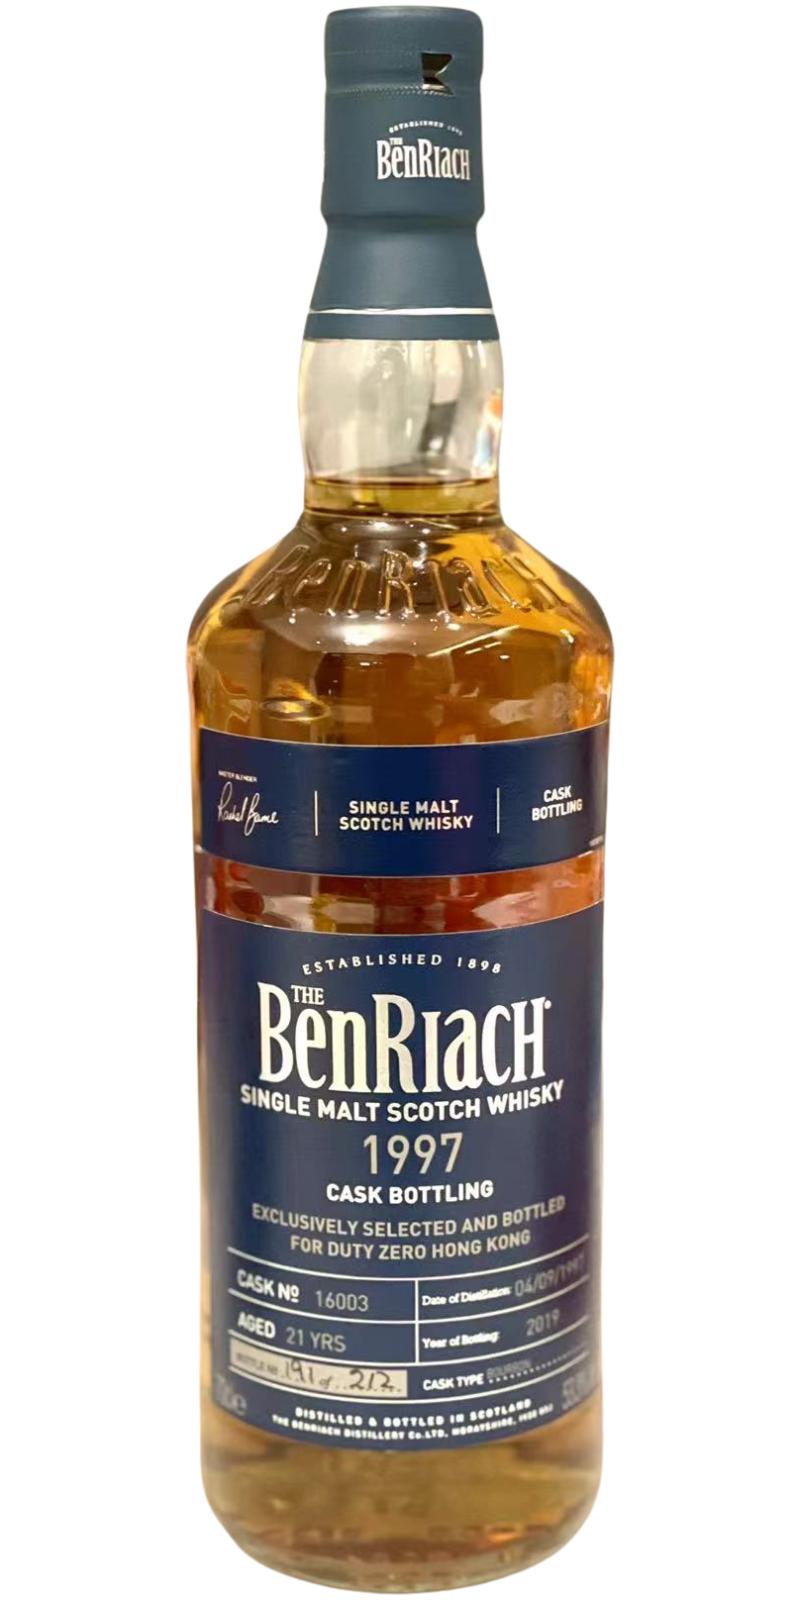 BenRiach 1997 Bourbon DUTY ZERO HONG KONG 53.3% 700ml